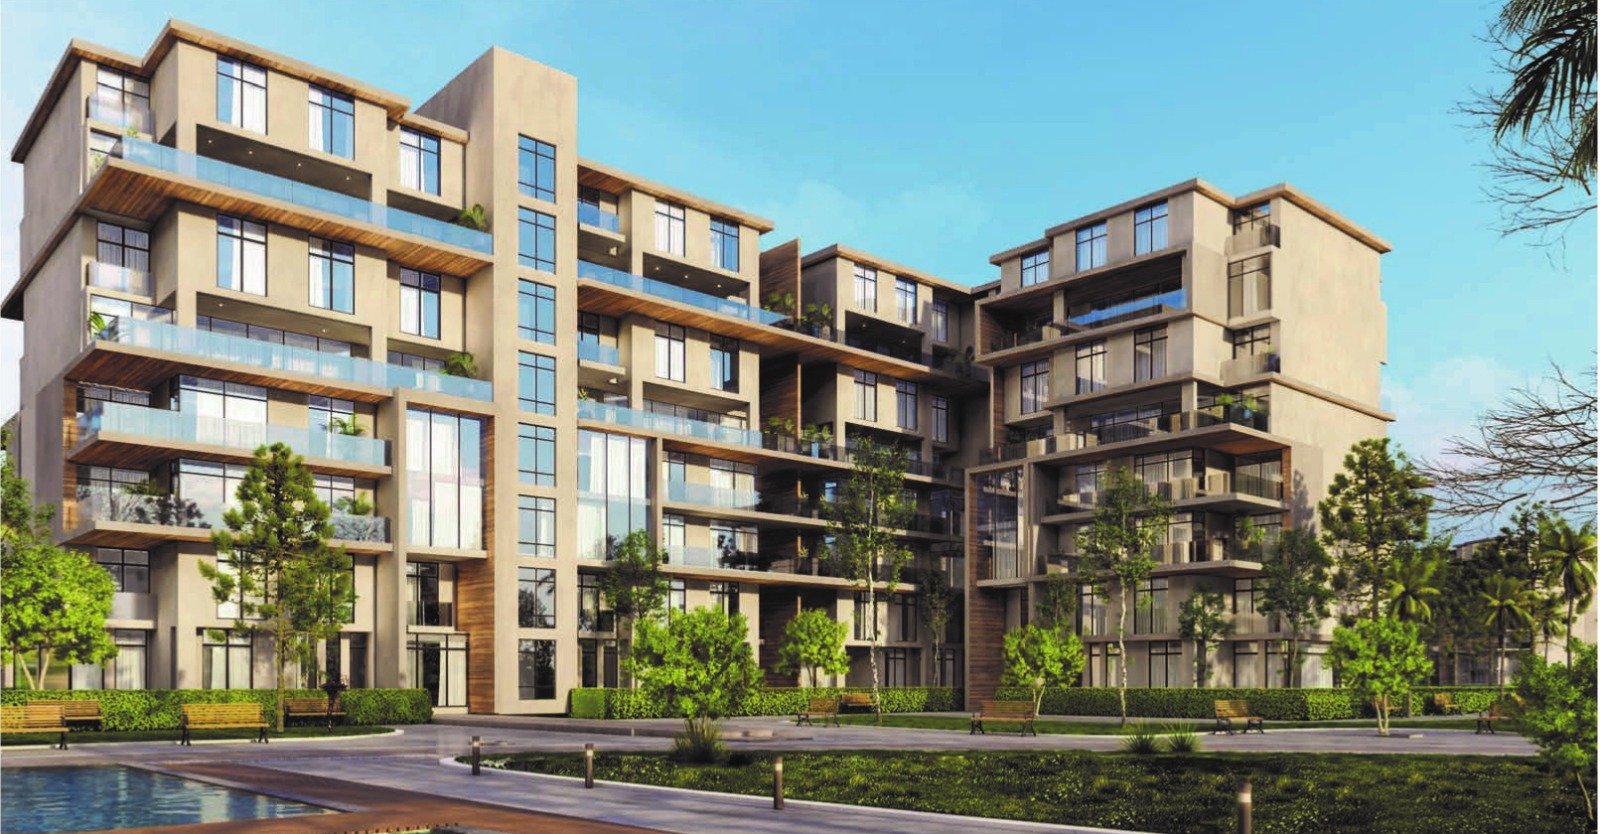 شقة للبيع بالعاصمة الإدارية الجديدة مساحة173متر في كمبوند Vinci | THE PEAK PROPERTIES